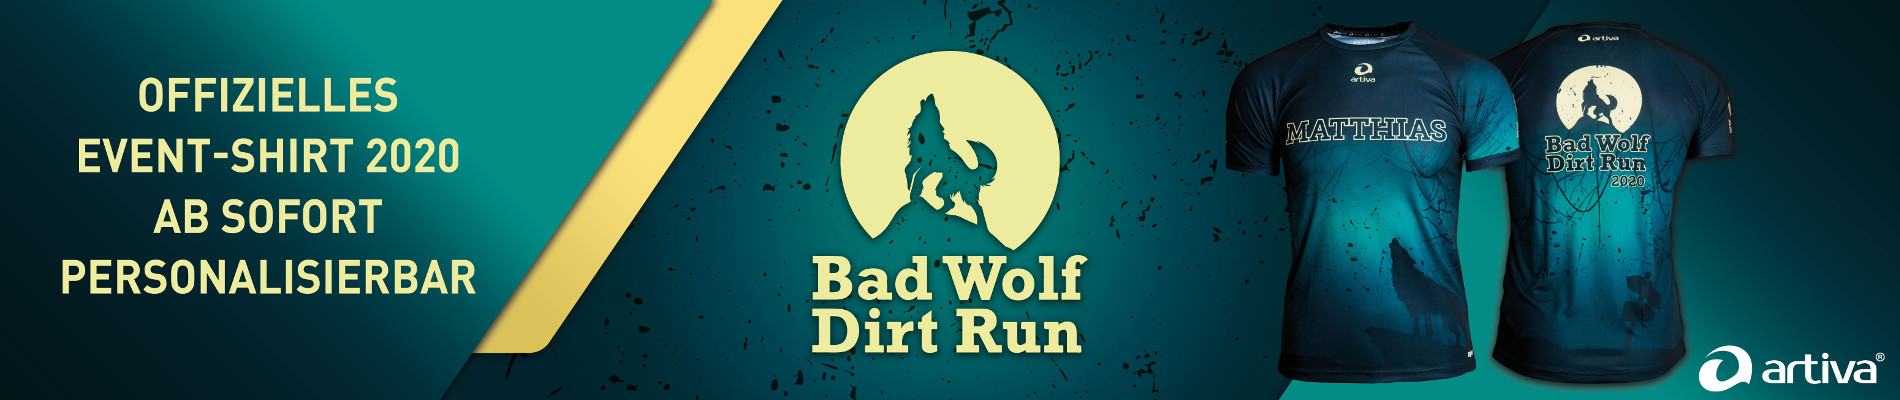 Bad Wolf Dirt Run Shop by artiva customized sportswear